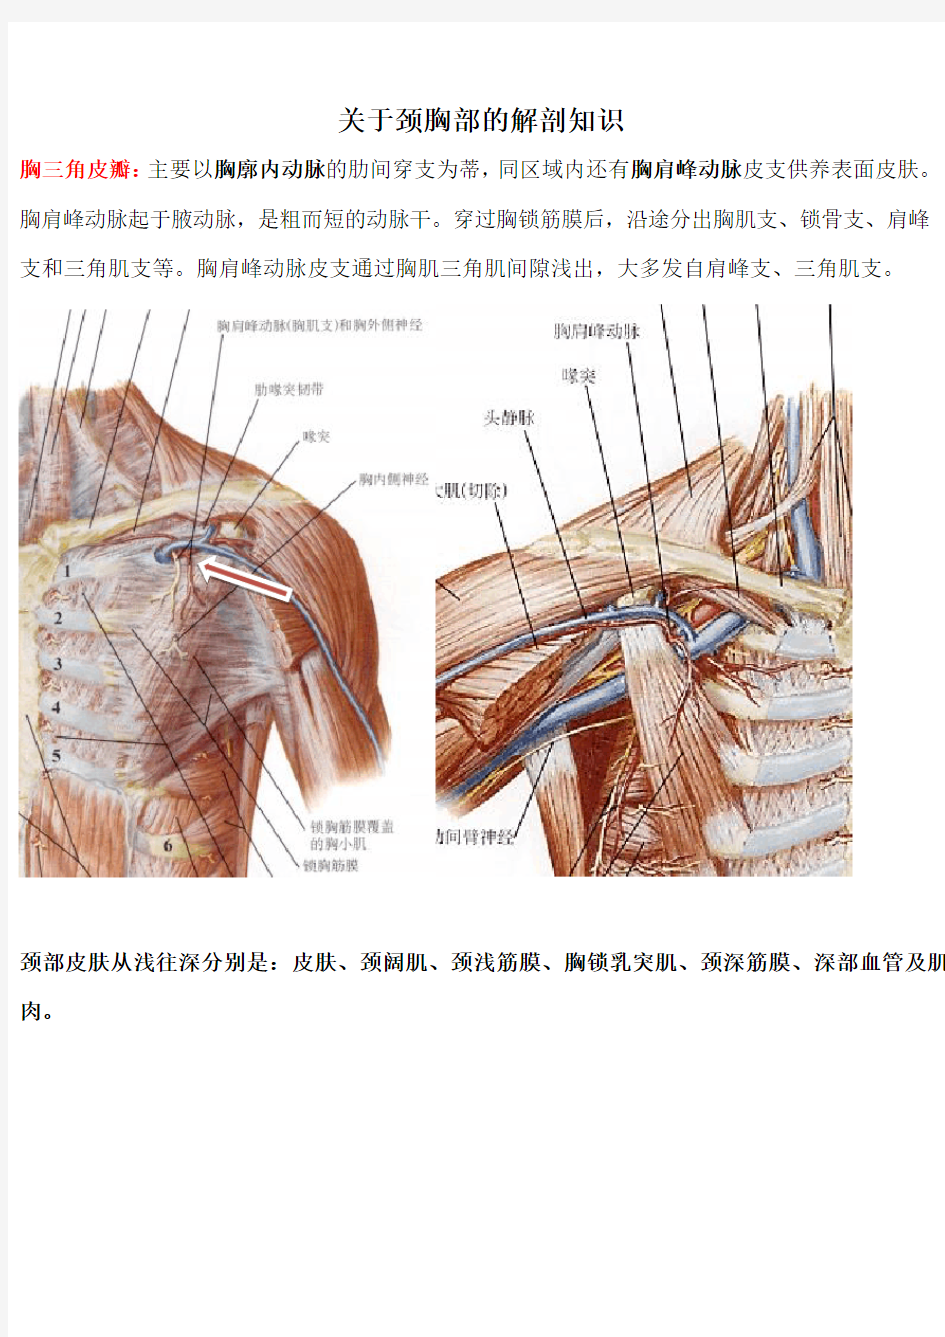 关于颈胸部的解剖知识